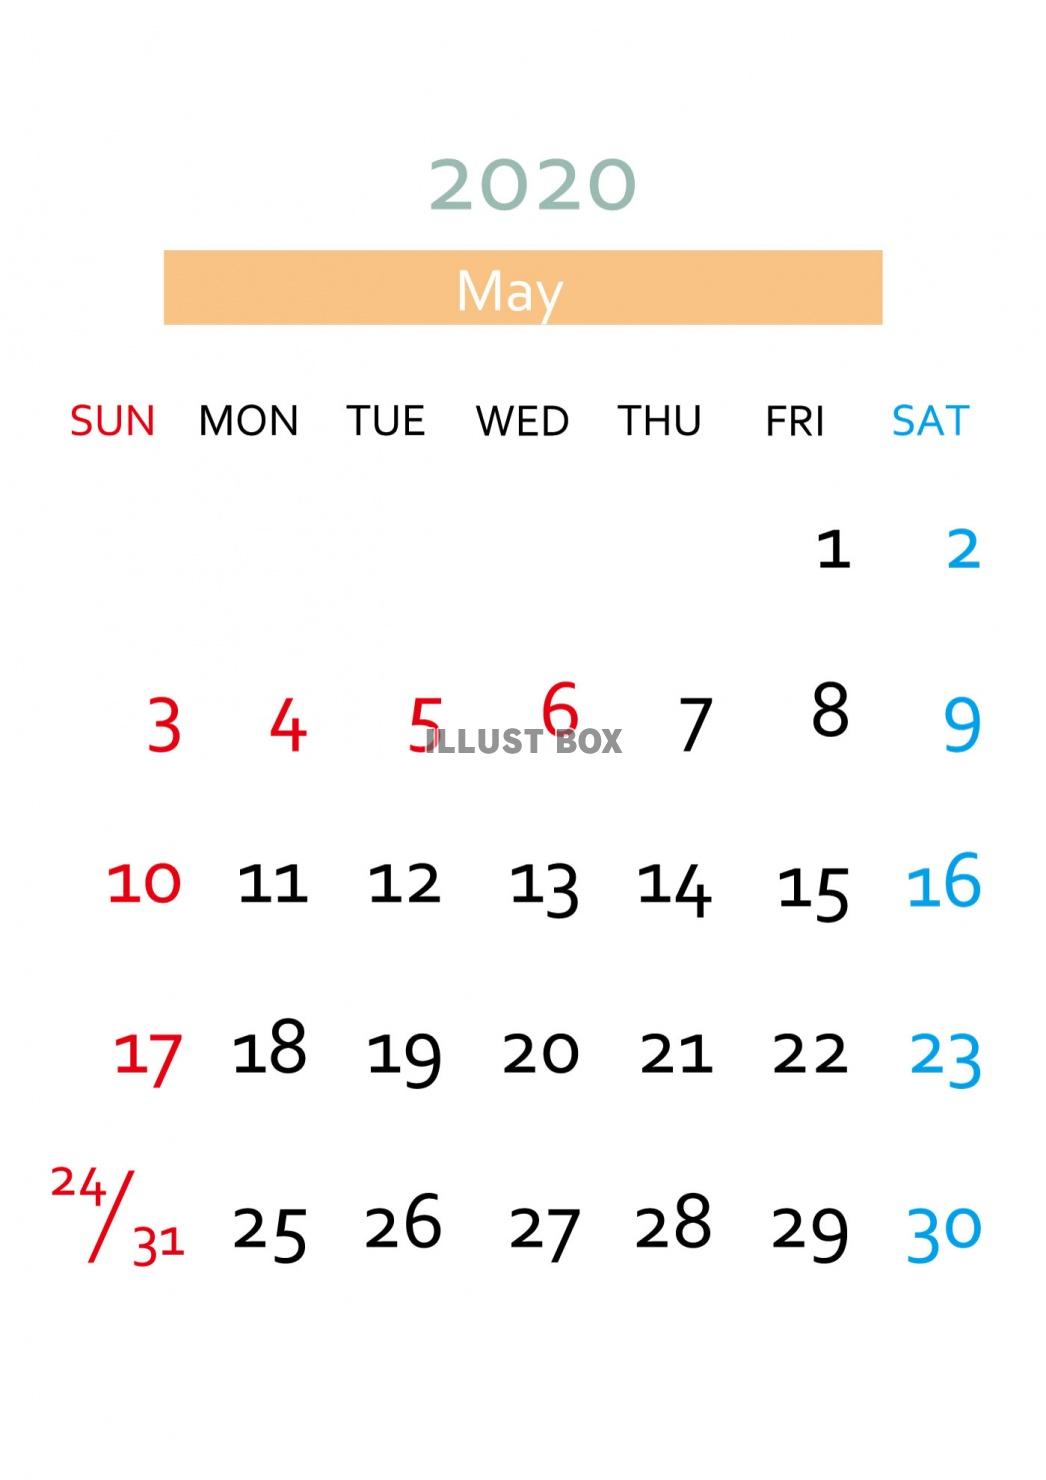 5月カレンダー イラスト無料